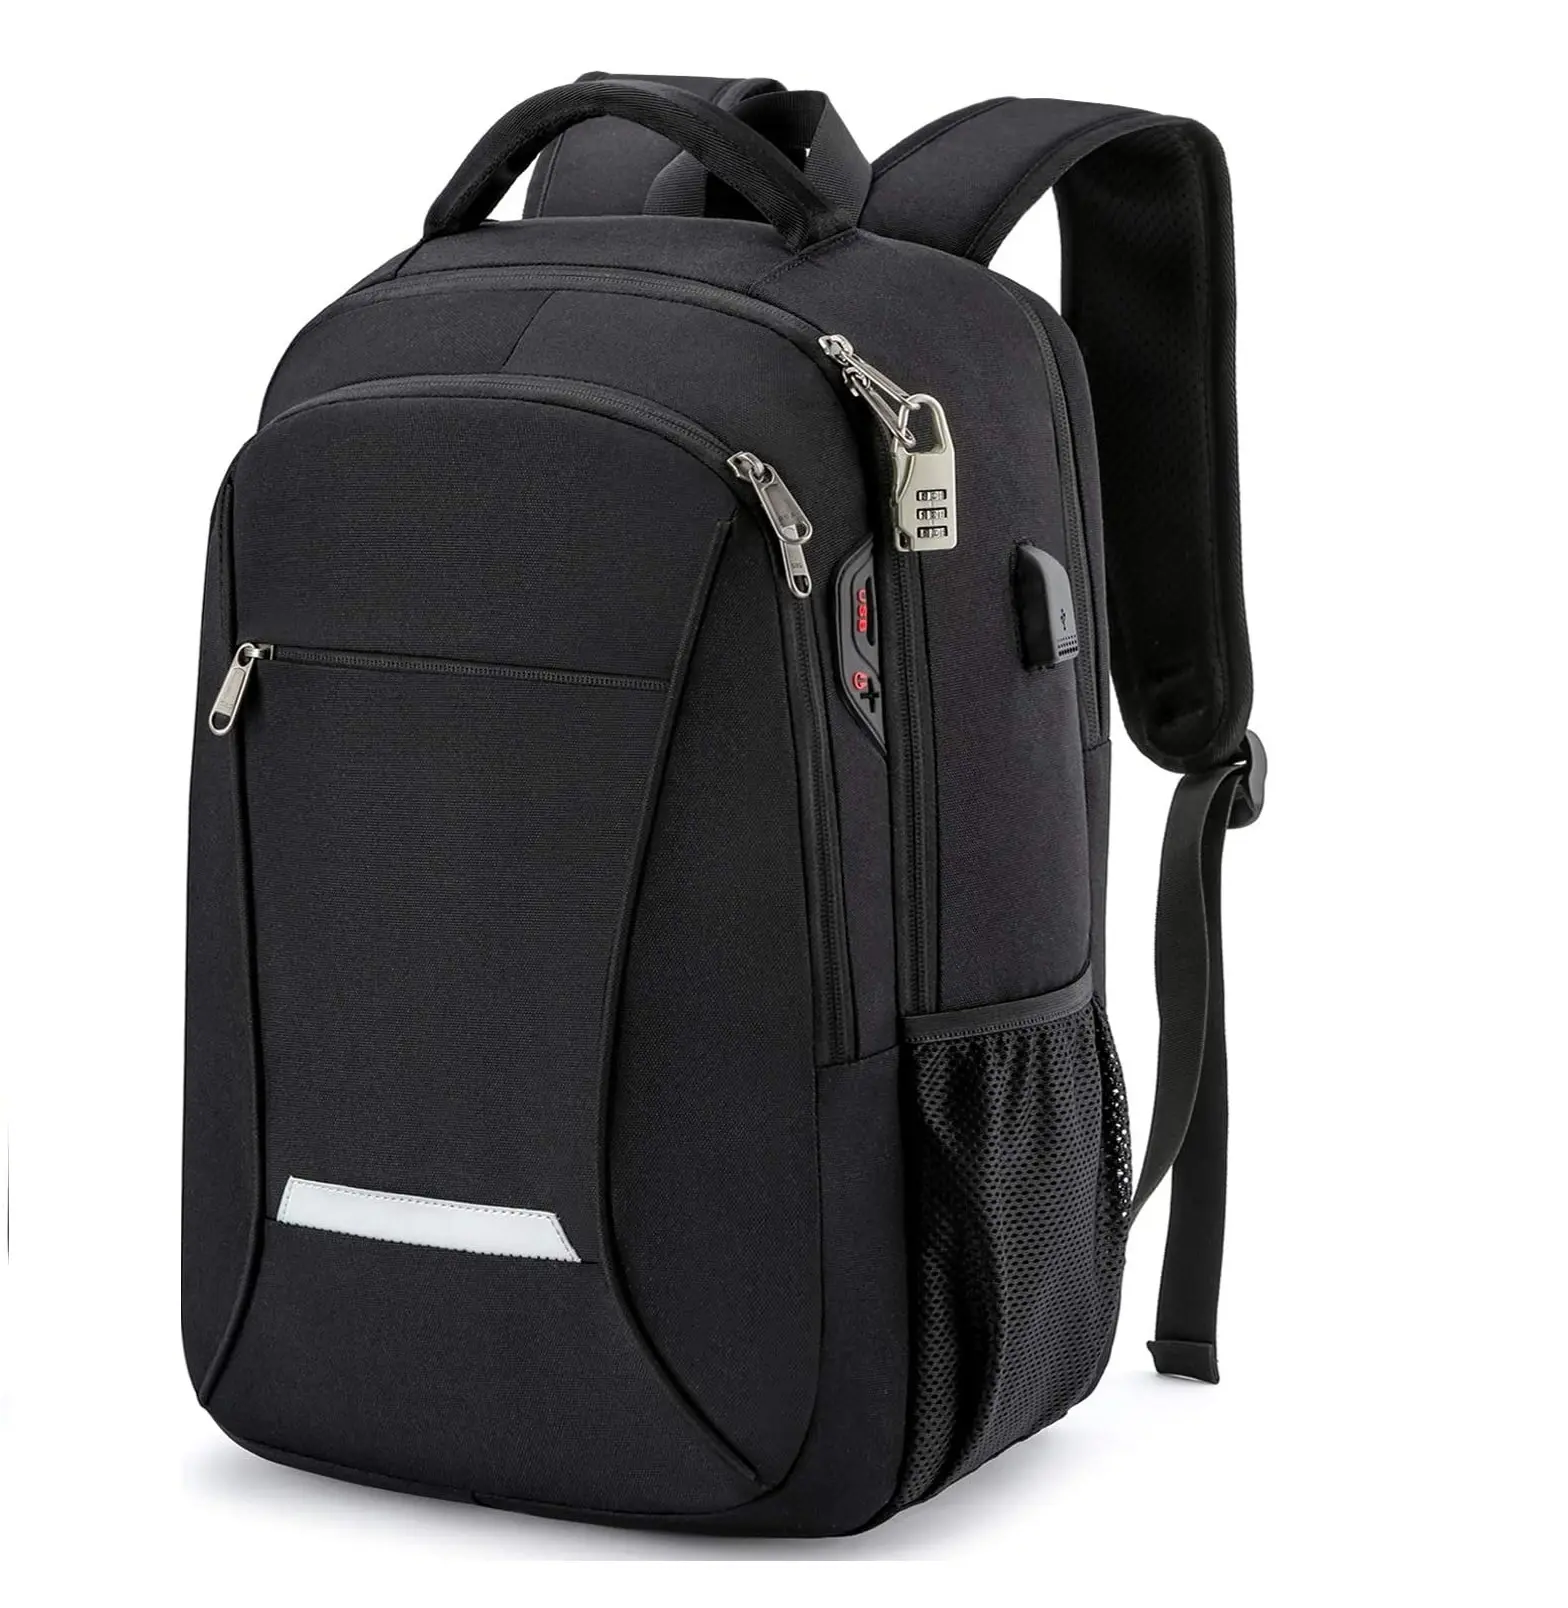 Men's backpacks, travel laptop backpacks with USB charging/headphone ports, durable waterproof college school backpacks, ladies